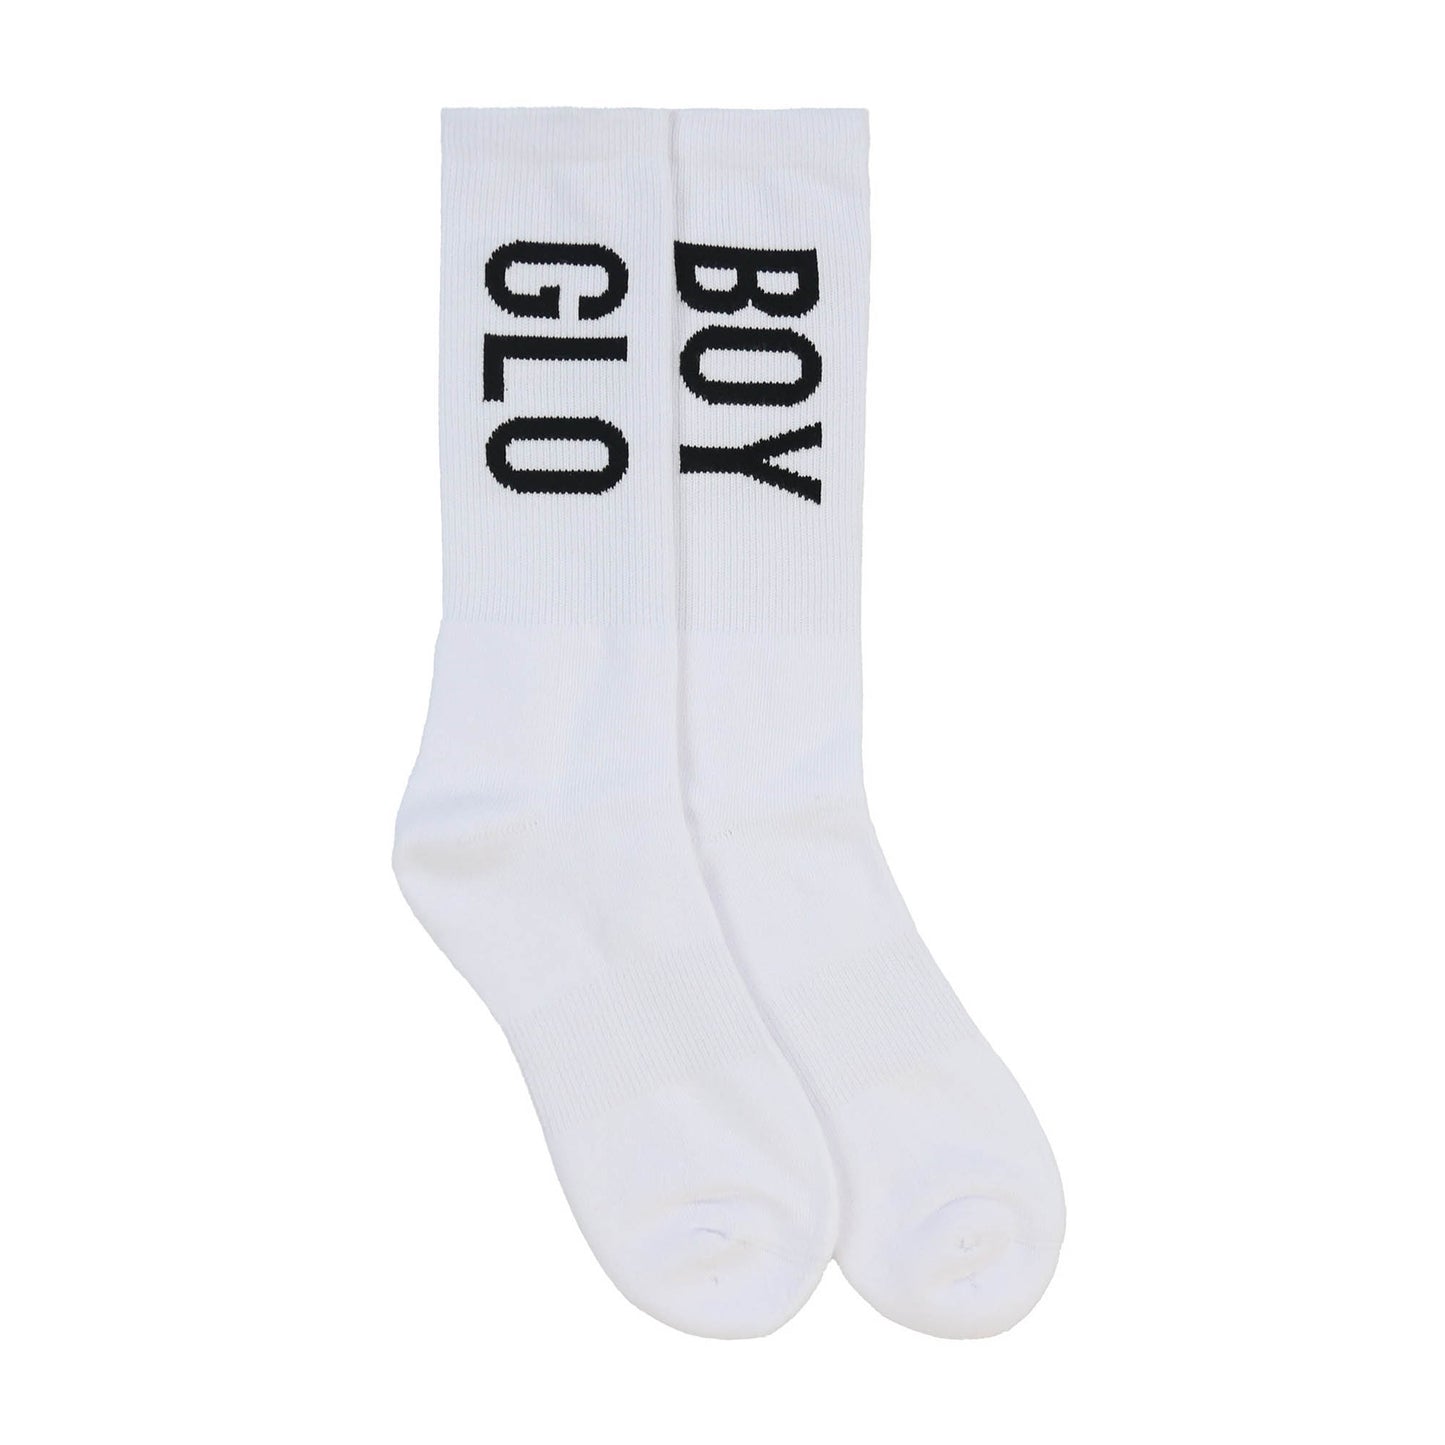 Glo Boy Socks (White)